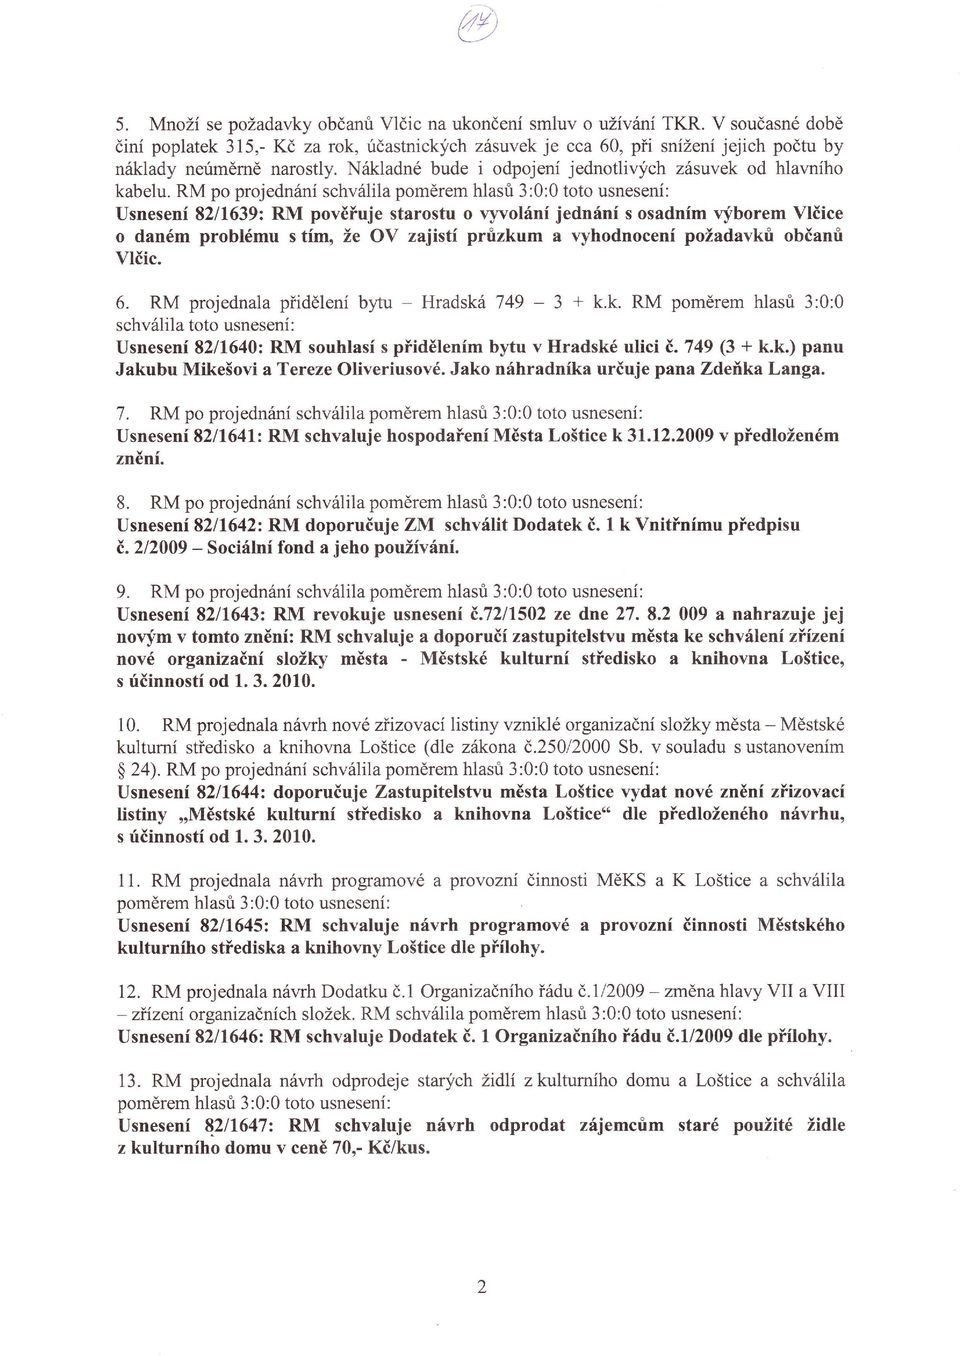 prrizkum a vyhodnocení požadavkri občanri Vlčic 6 RM projednala pťidělení bytu - Hradská 749-3 + kk RM poměrem hlasri 3:0:0 schválila toto usnesení Usnesení 8211'640: RM souhlasí s pťidětením bytu v